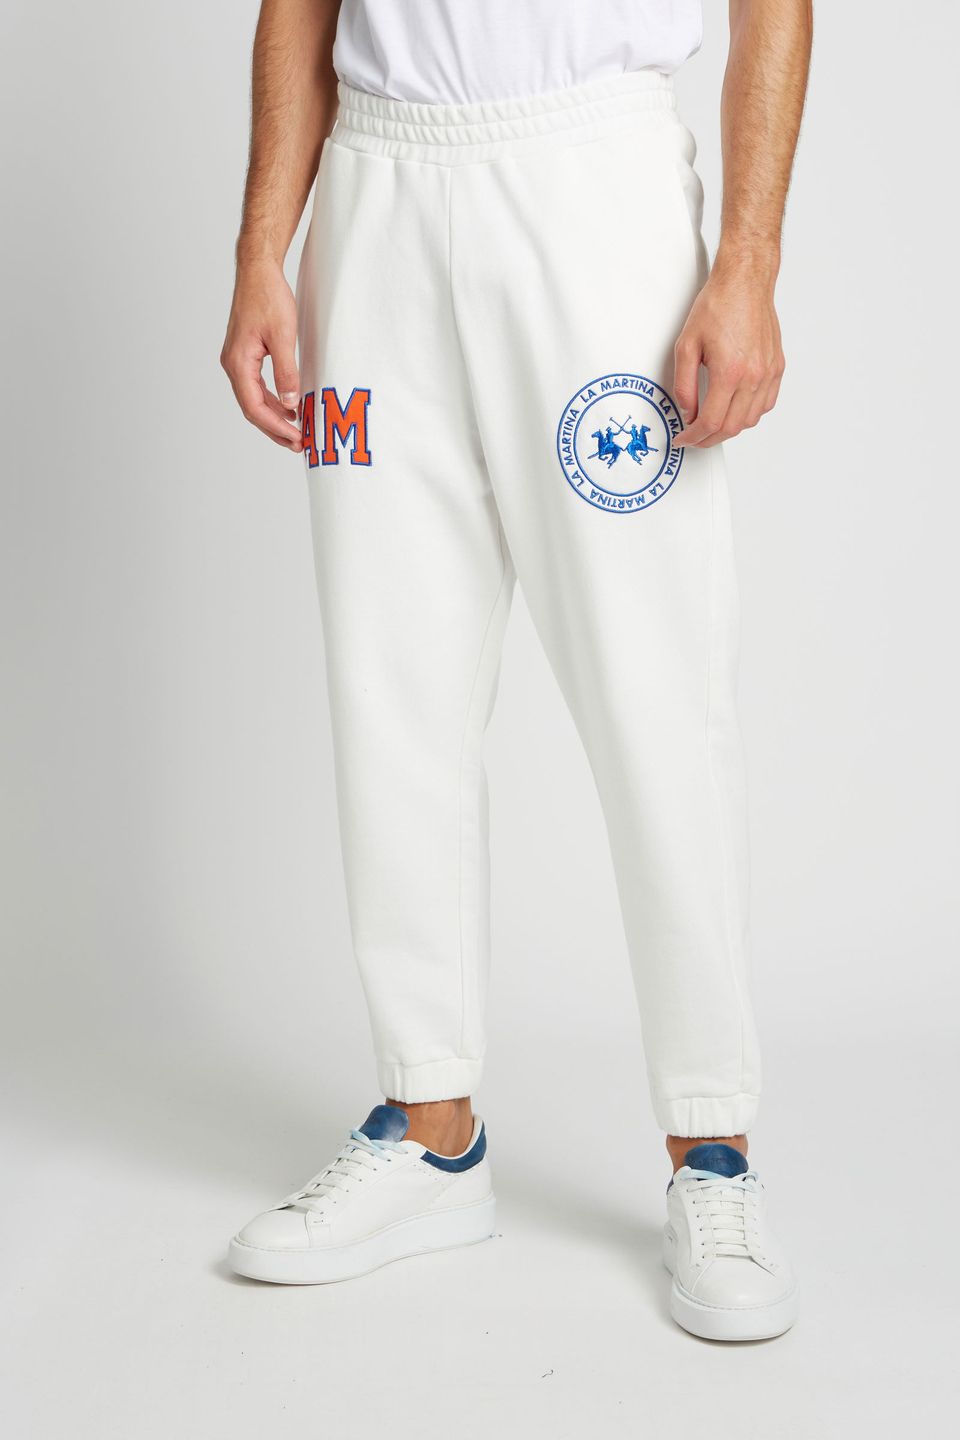 Pantalone da uomo modello jogger in cotone elasticizzato oversize - La Martina - Official Online Shop